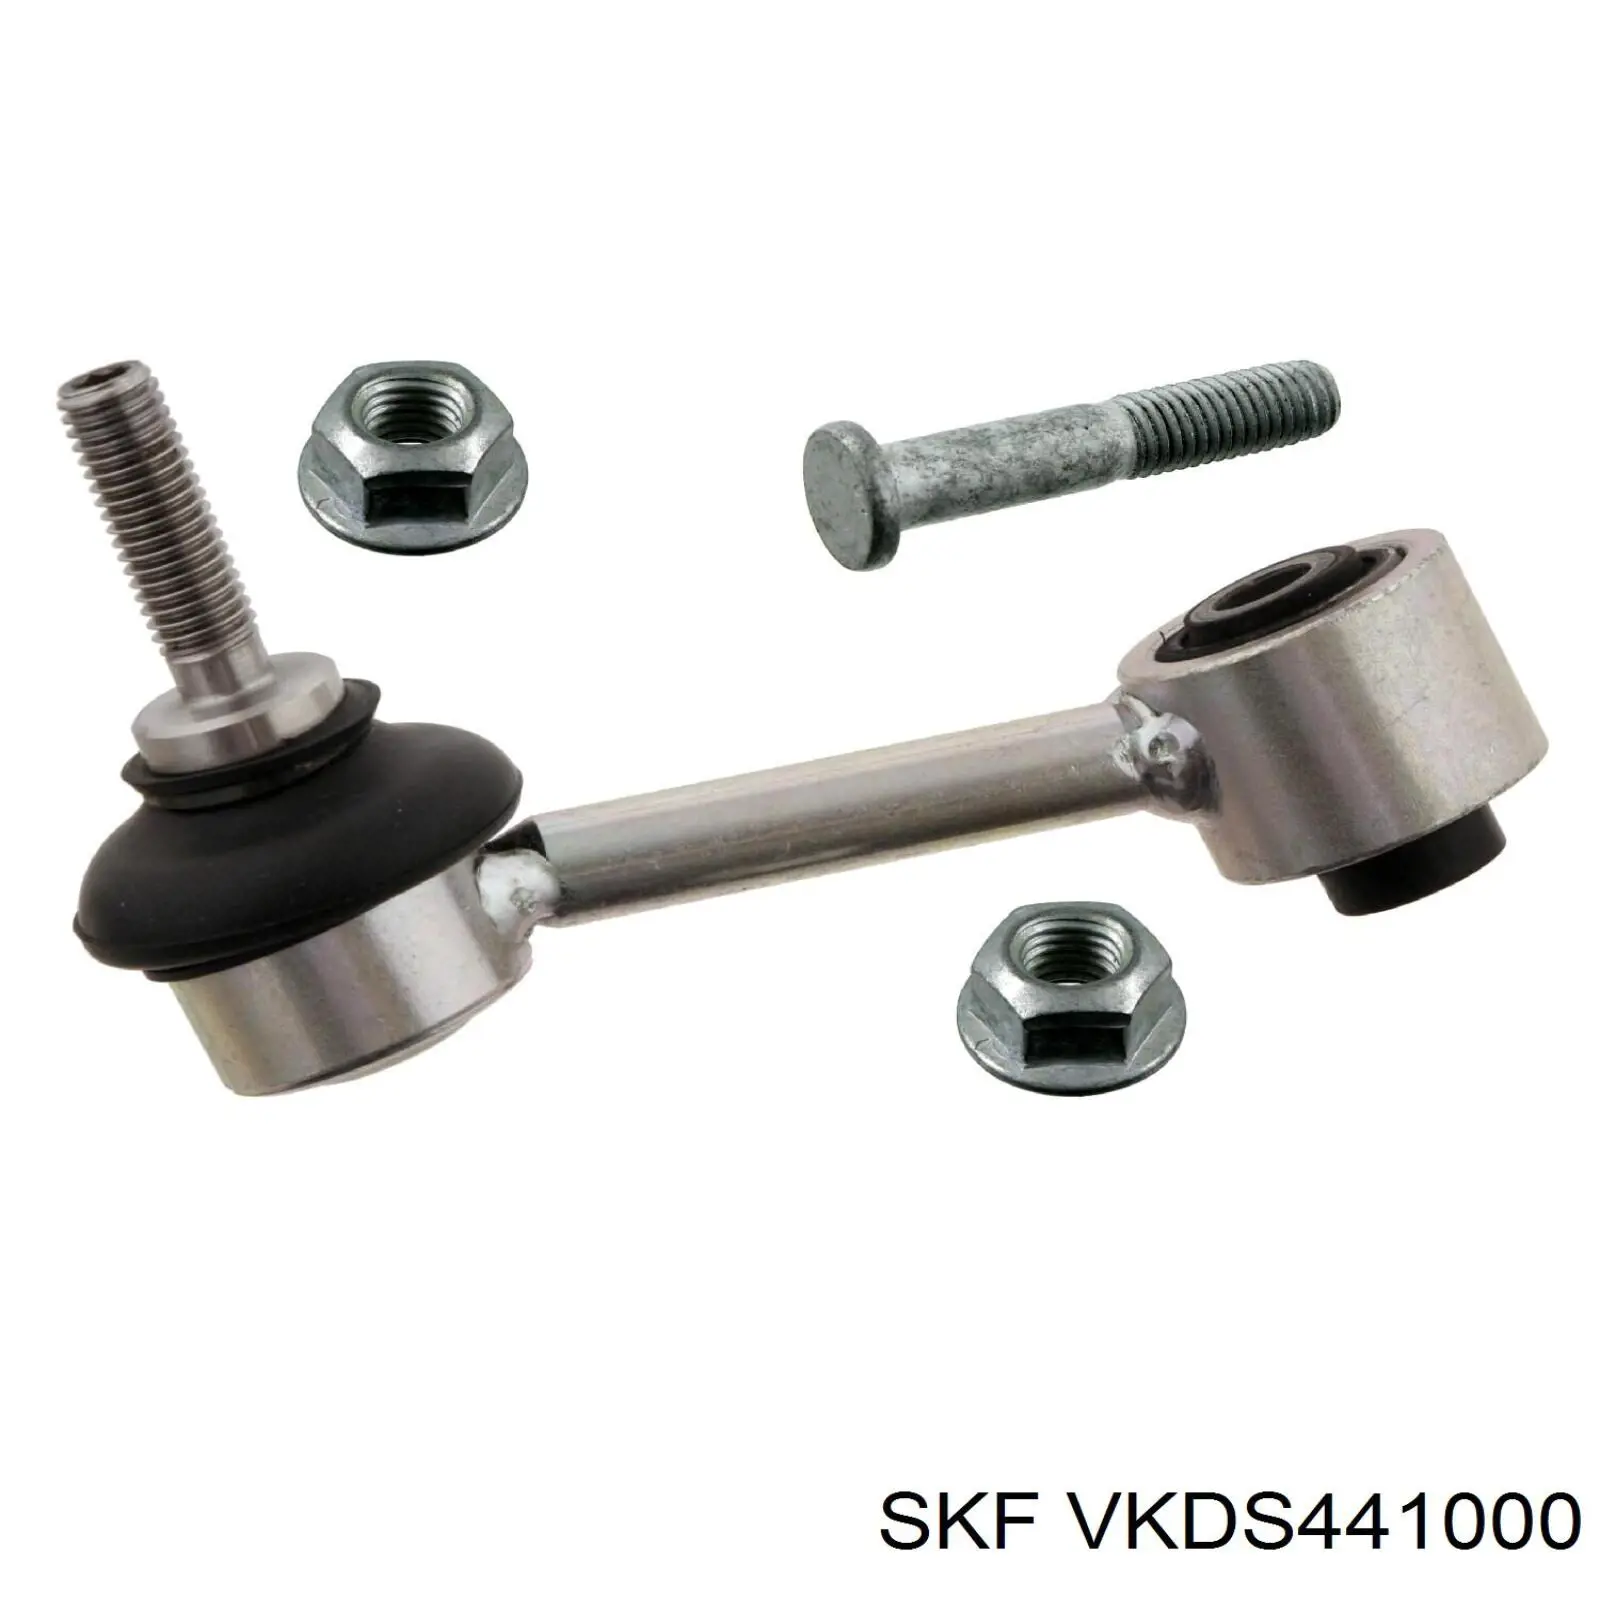 VKDS 441000 SKF soporte de barra estabilizadora trasera